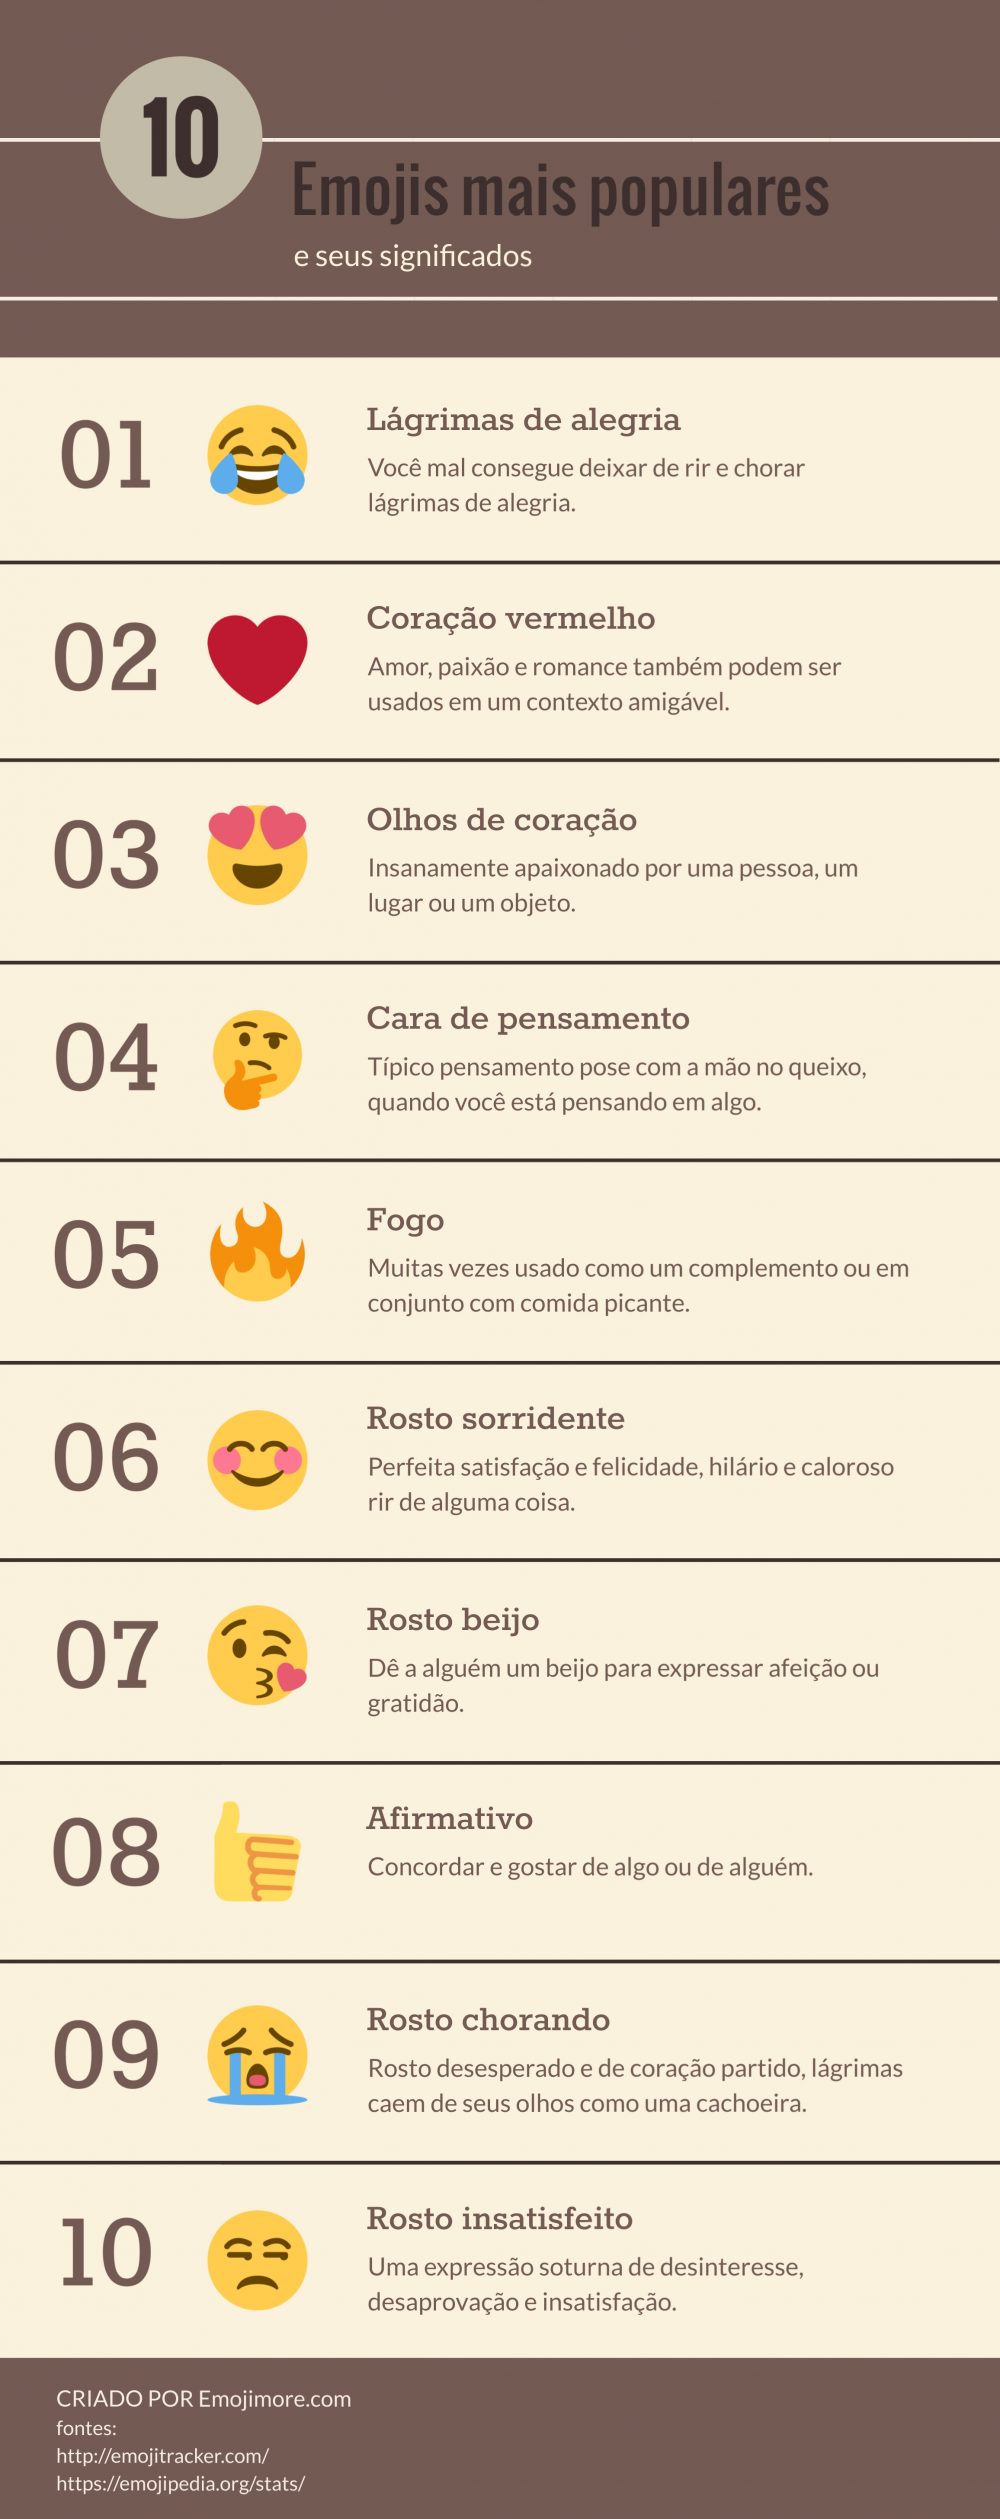 10 Emojis mais populares infografico